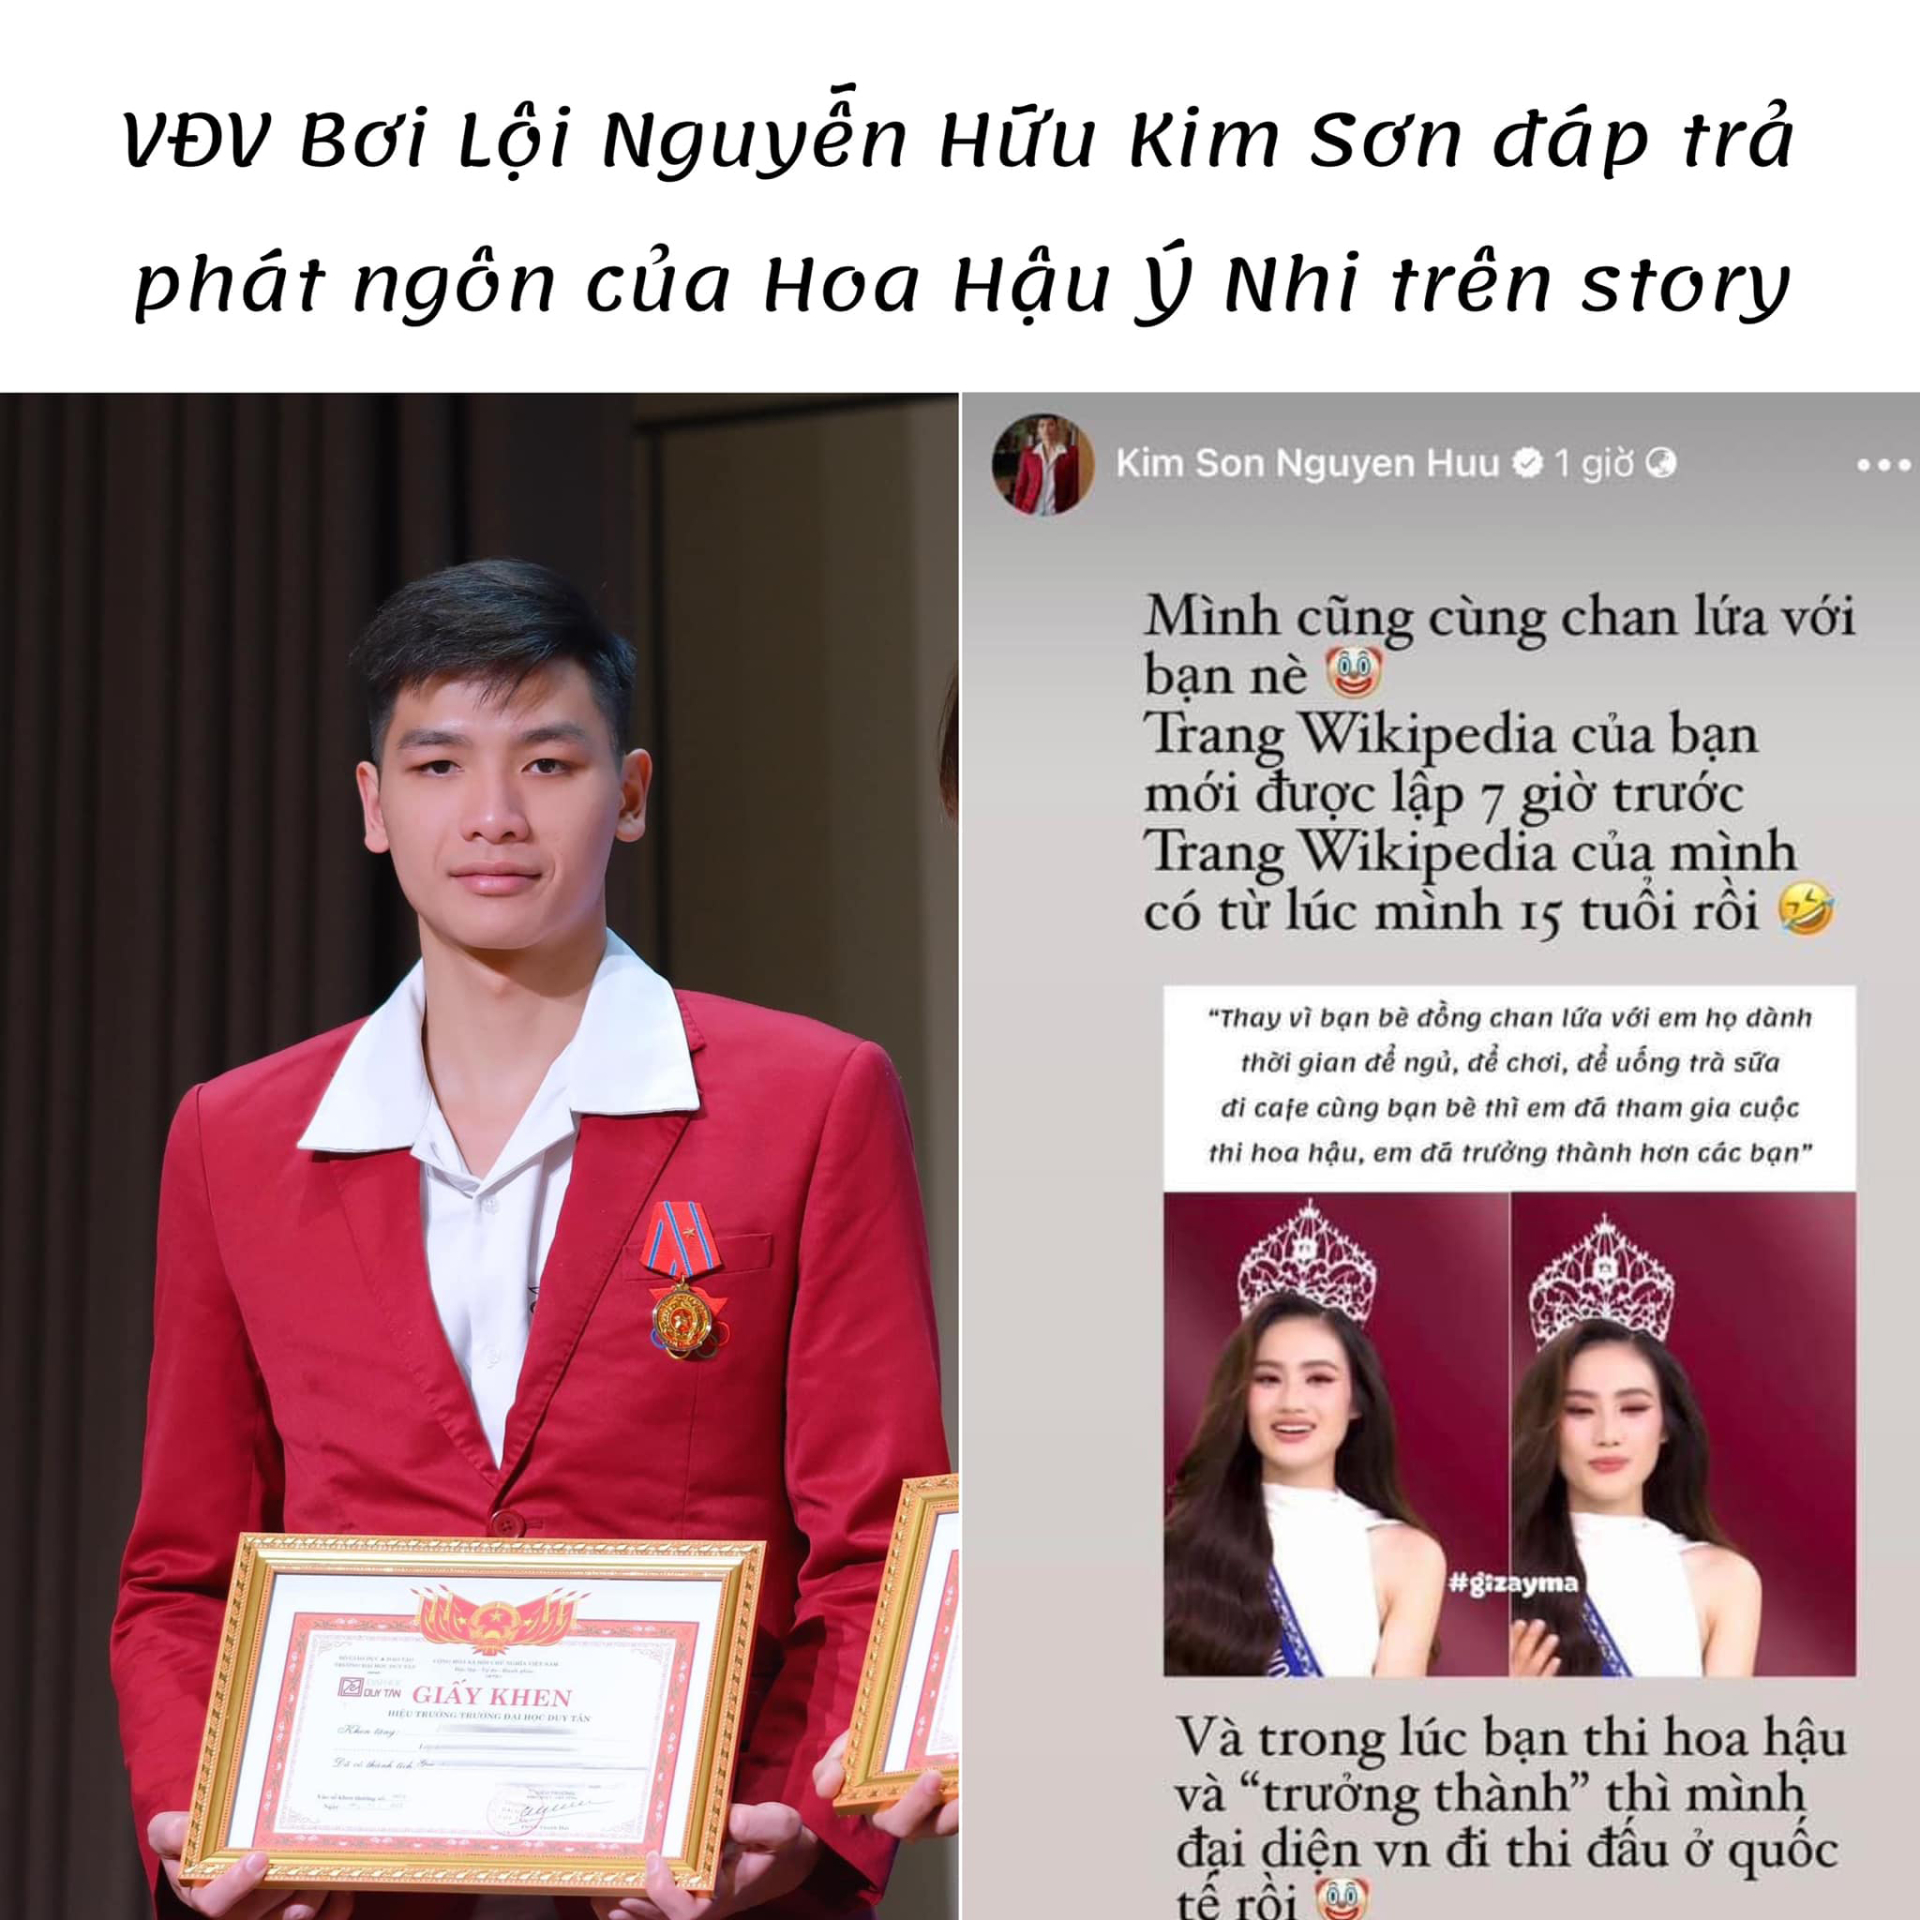 Nguyễn Hữu Kim Sơn từng phản ứng trước phát ngôn gây tranh cãi của Hoa hậu Ý Nhi.